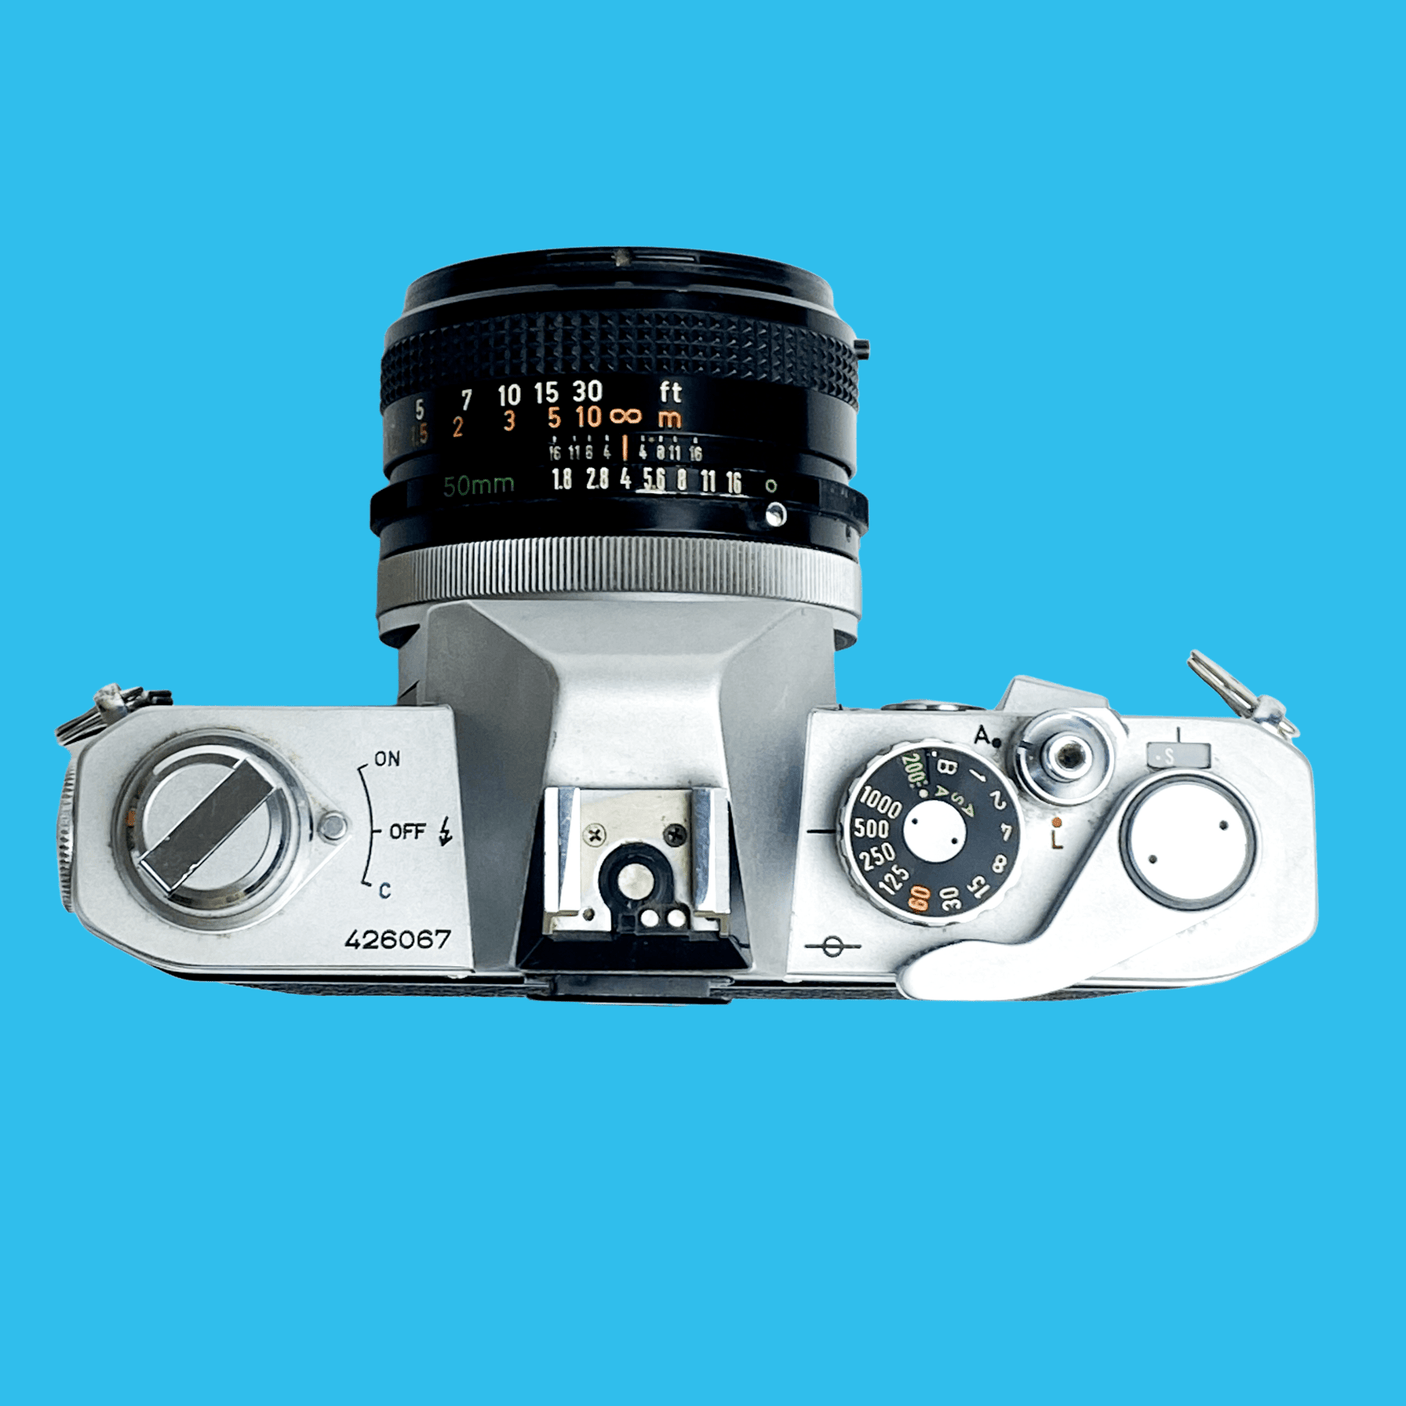 Canon FTb QL 35mm SLR Film Camera With Canon Sc 50mm F1.8.